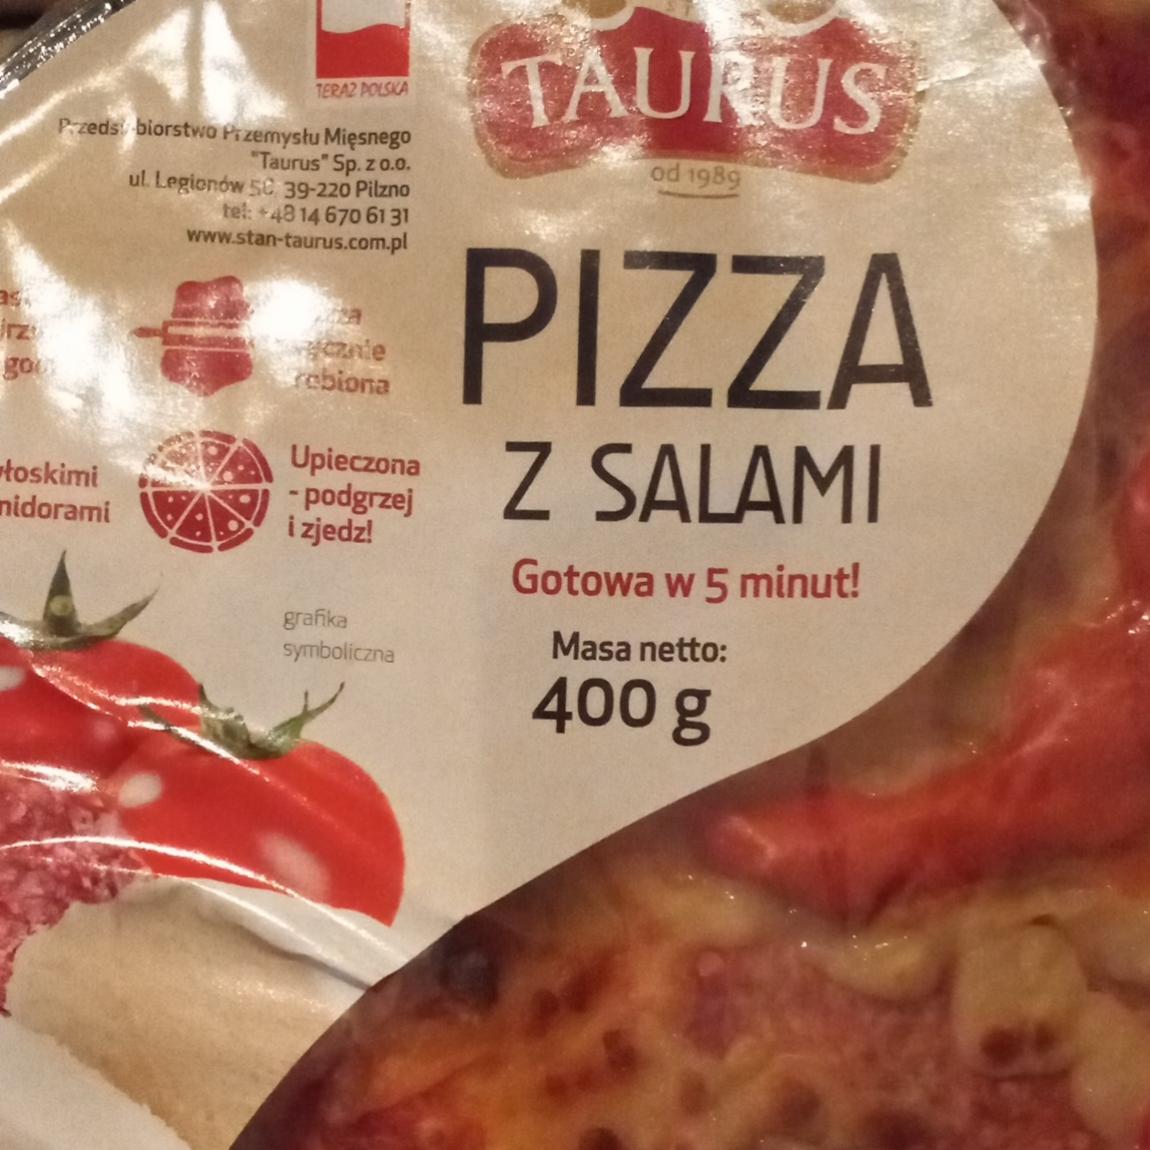 Zdjęcia - pizza z salami Taurus